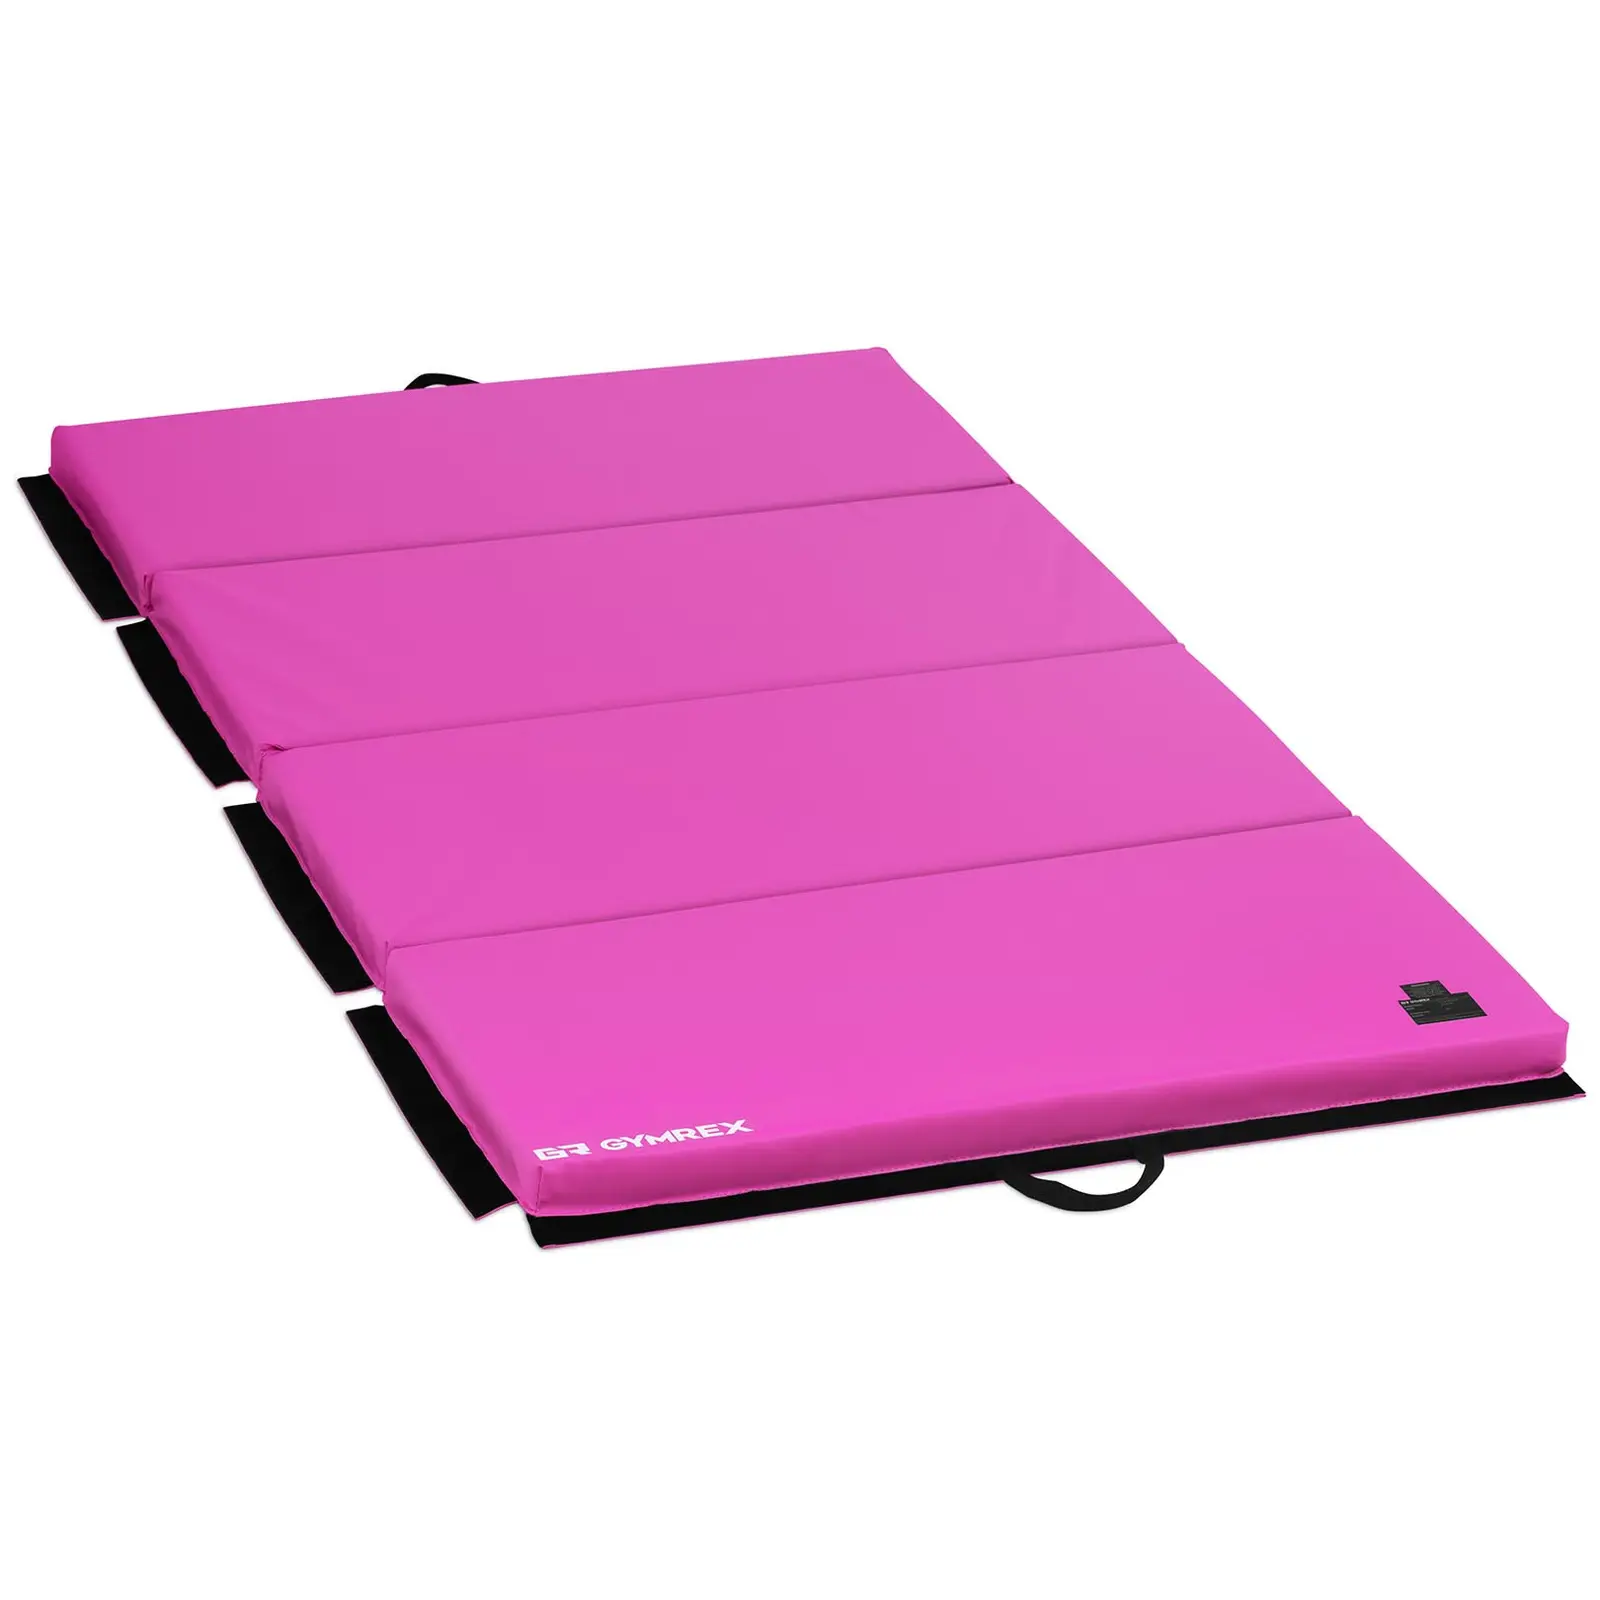 Tornaszőnyeg - 200 x 100 x 5 cm - összehajtható -  Pink/Pink- terhelhetőség max. 170kg